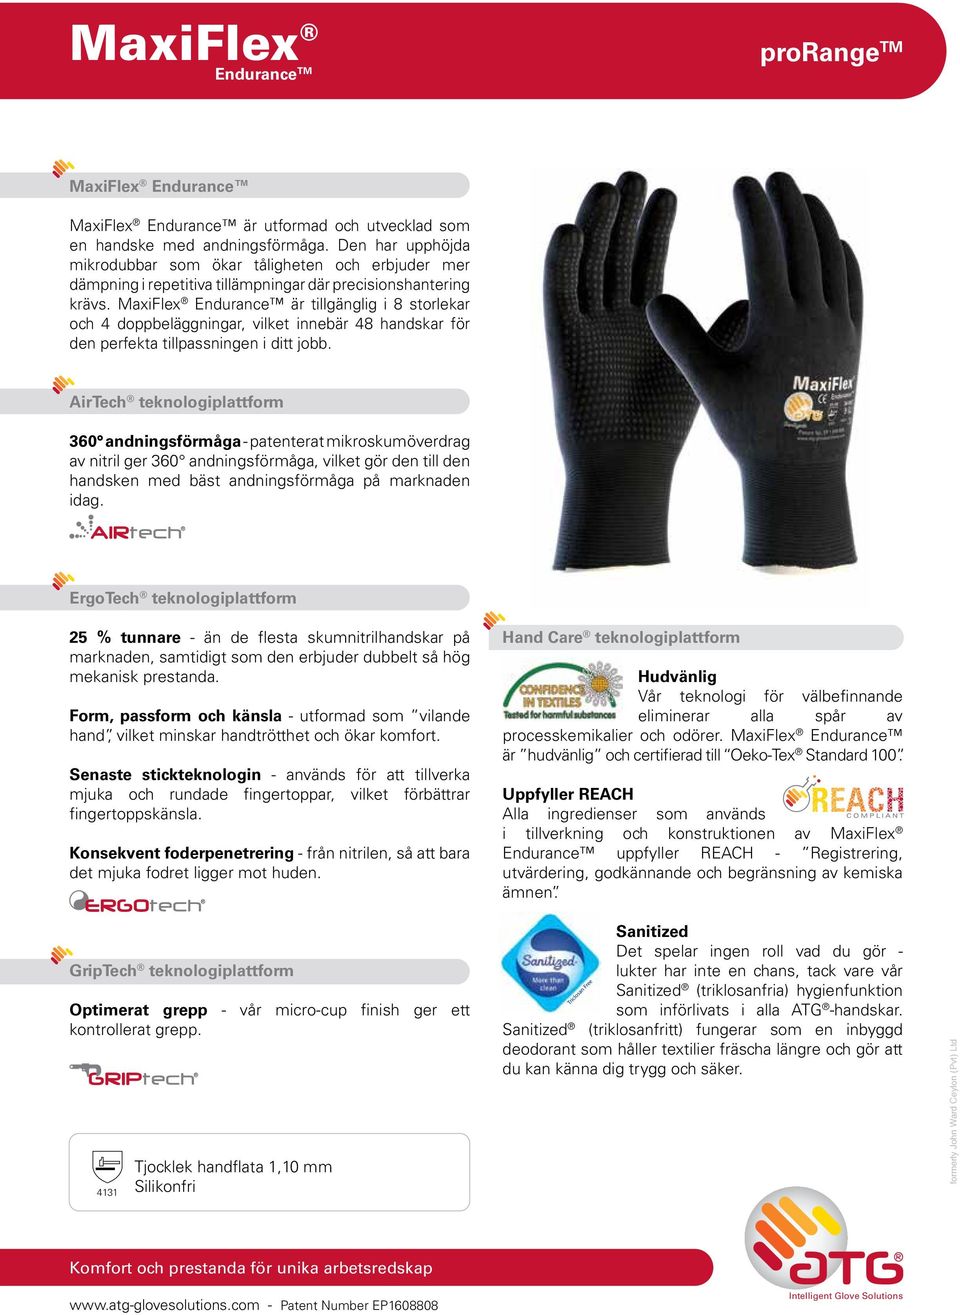 MaxiFlex Endurance är tillgänglig i 8 storlekar och 4 doppbeläggningar, vilket innebär 48 handskar för den perfekta tillpassningen i ditt jobb.